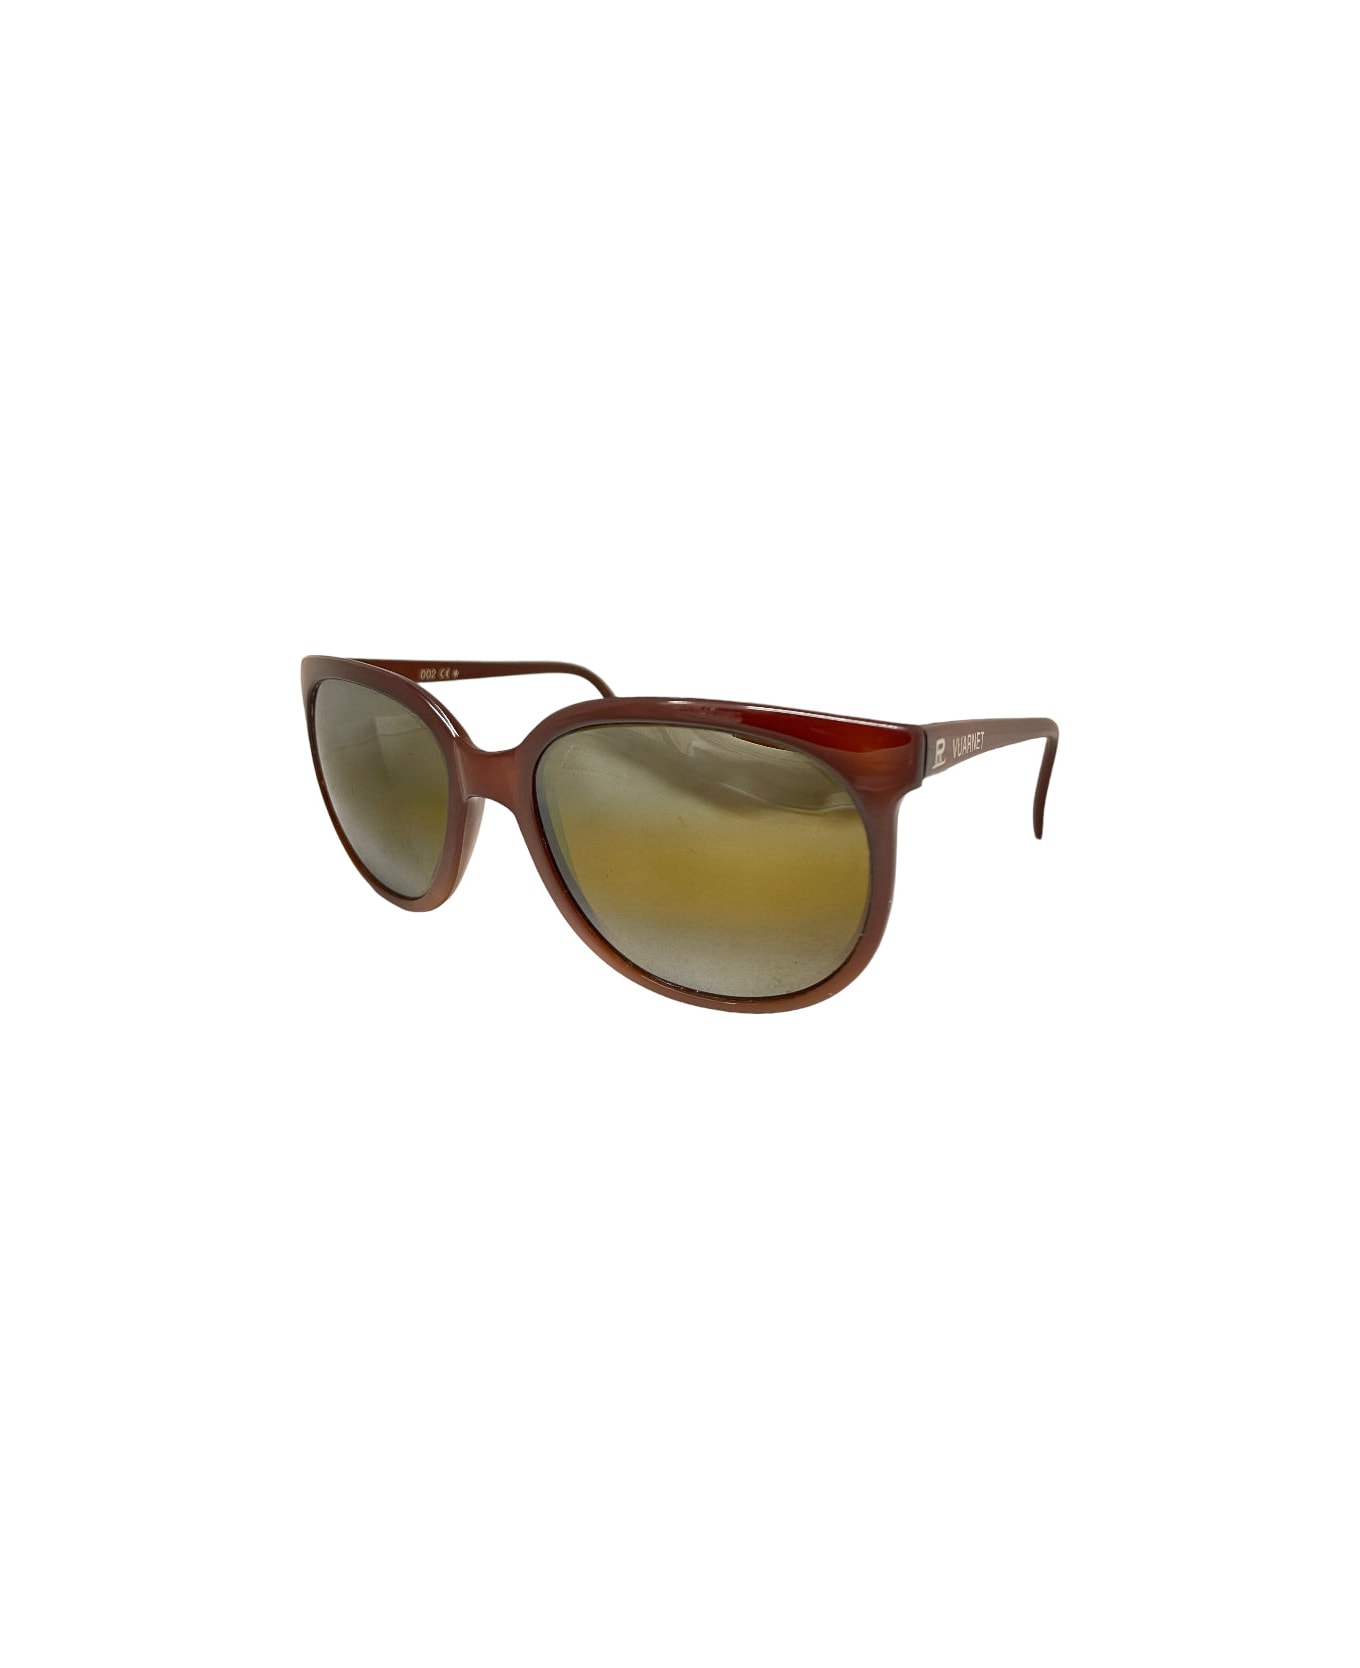 Vuarnet Pouilloux 002 - Brown Sunglasses